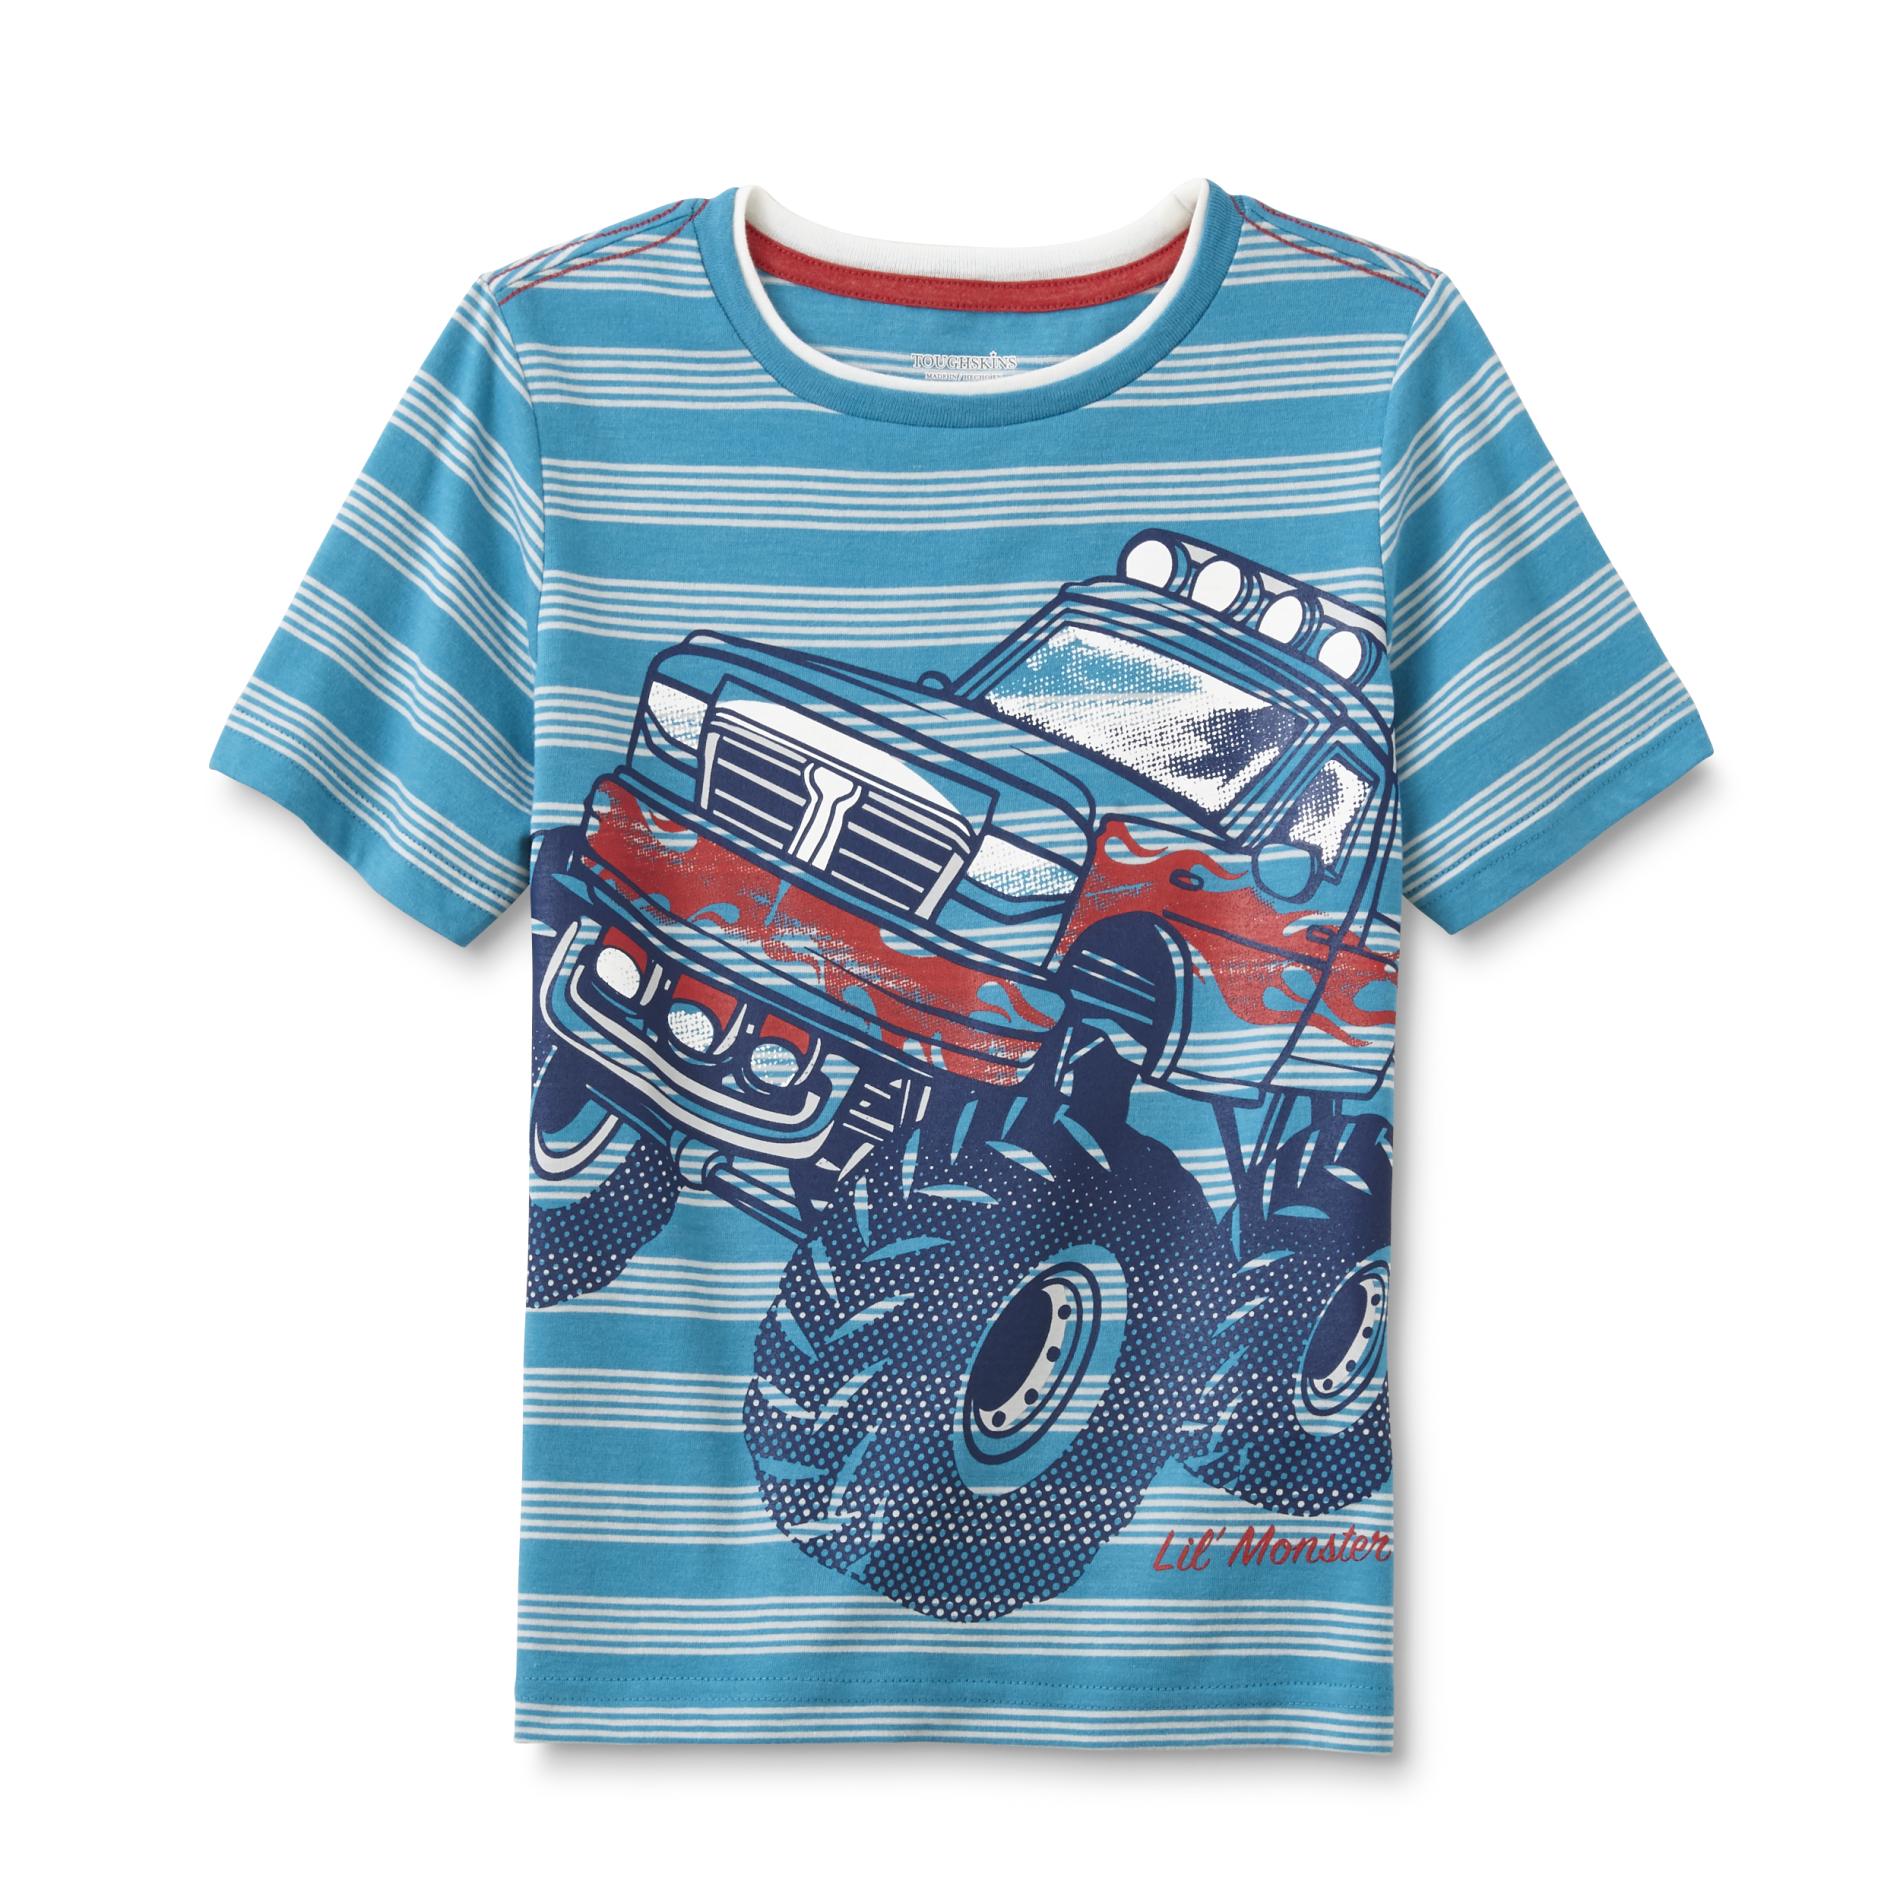 Toughskins Boy's Graphic T-Shirt - Monster Truck